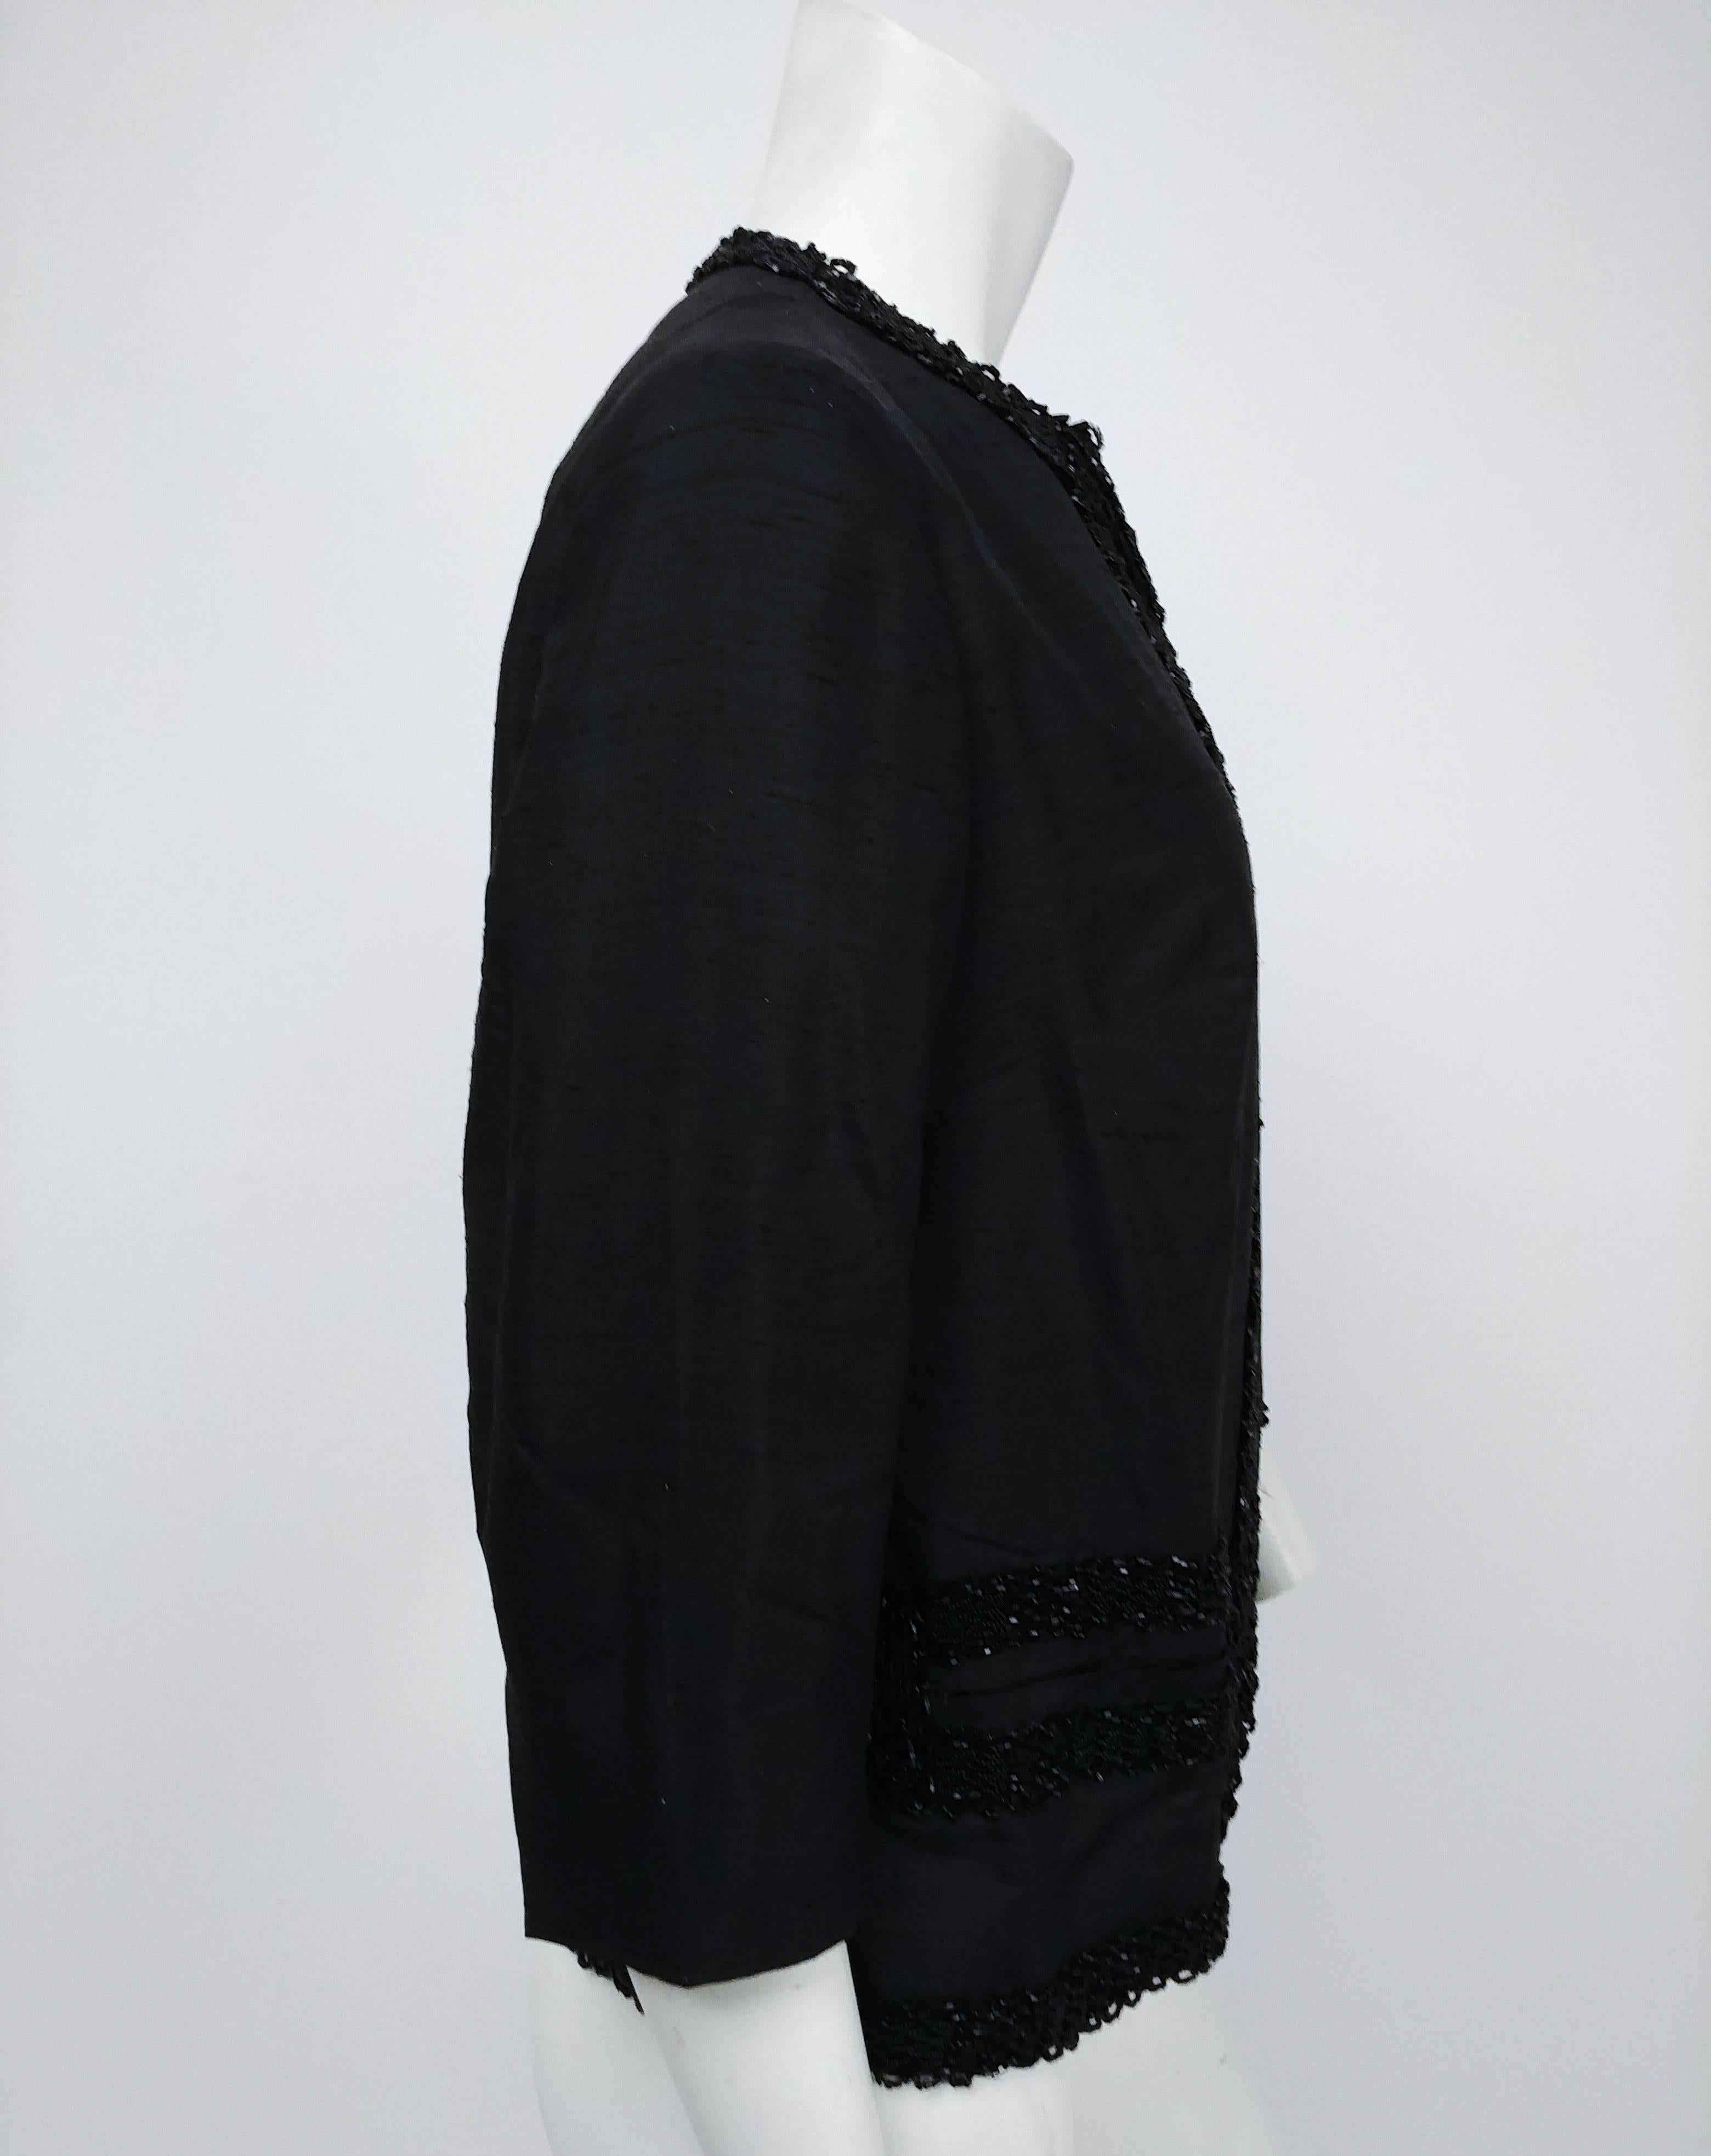 1960er Jahre Shantung Schwarz Perlen Abend Jacke. Kragenlose 1960er-Jahre-Jacke mit Perlenbesatz, handschuhlangen Ärmeln und klassischer, kastenförmiger Silhouette. Zwei Paspeltaschen vorne. 